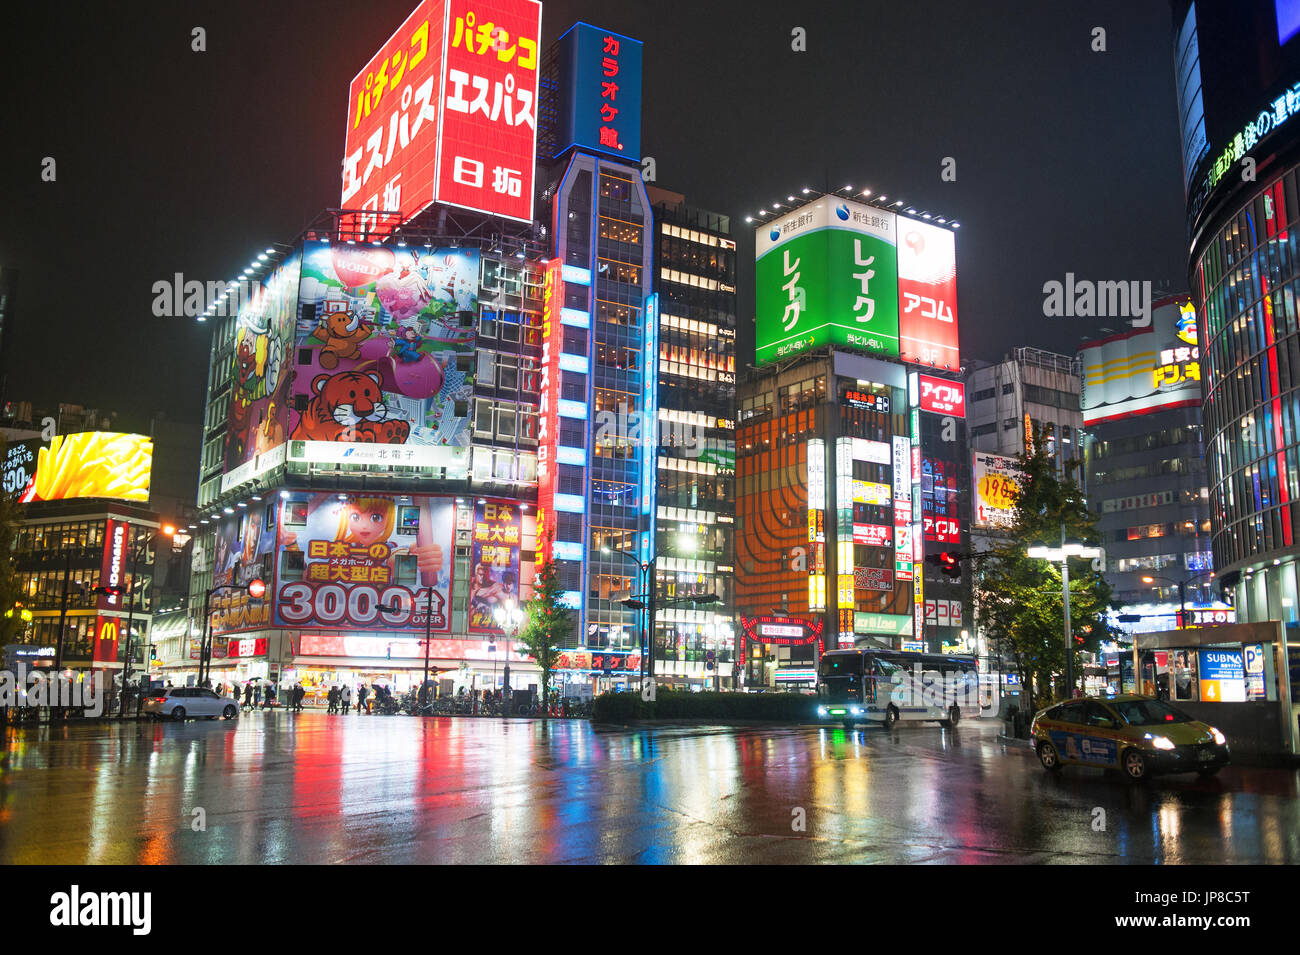 Tokyo, Japan - Shinjuku district night Stock Photo